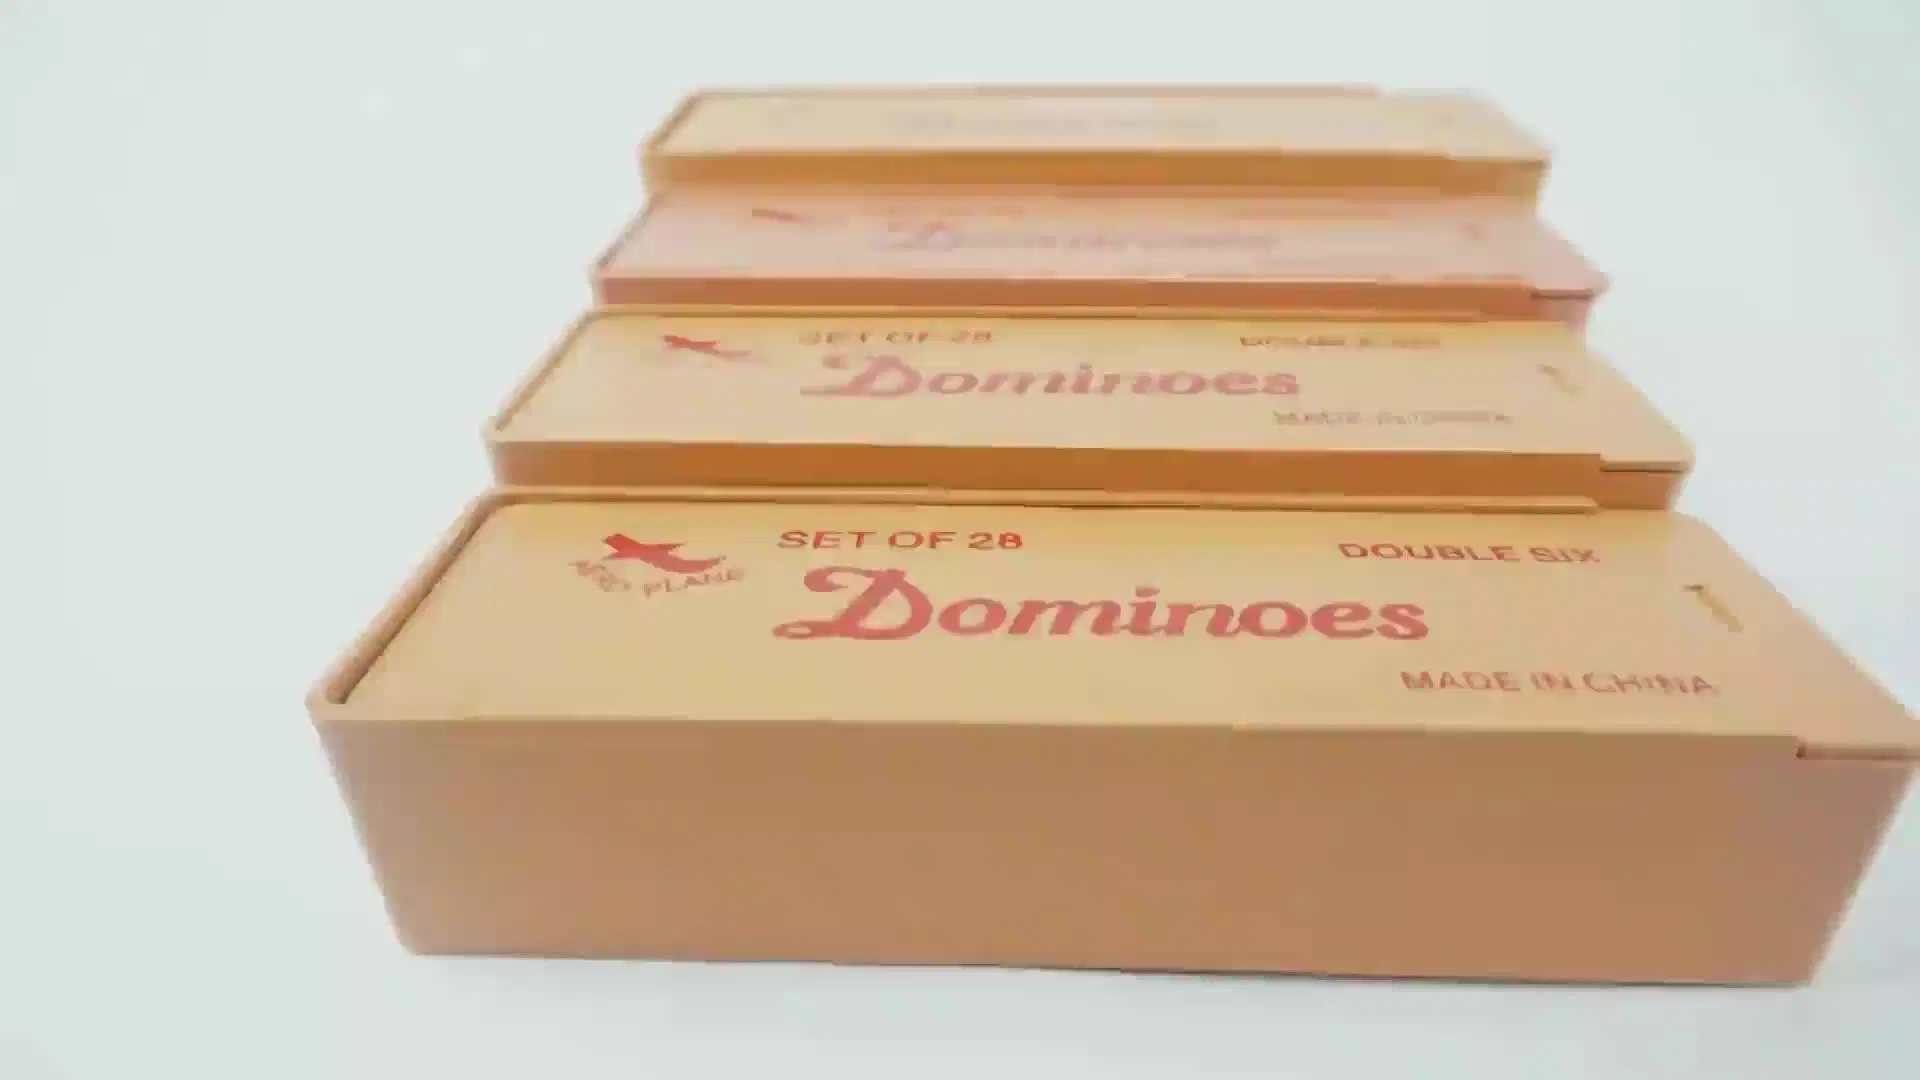 تم ضبط الدومينو عاجي الحجم المخصص 6 في علبة بلاستيكية كلاسيكية لعبة الدومينو